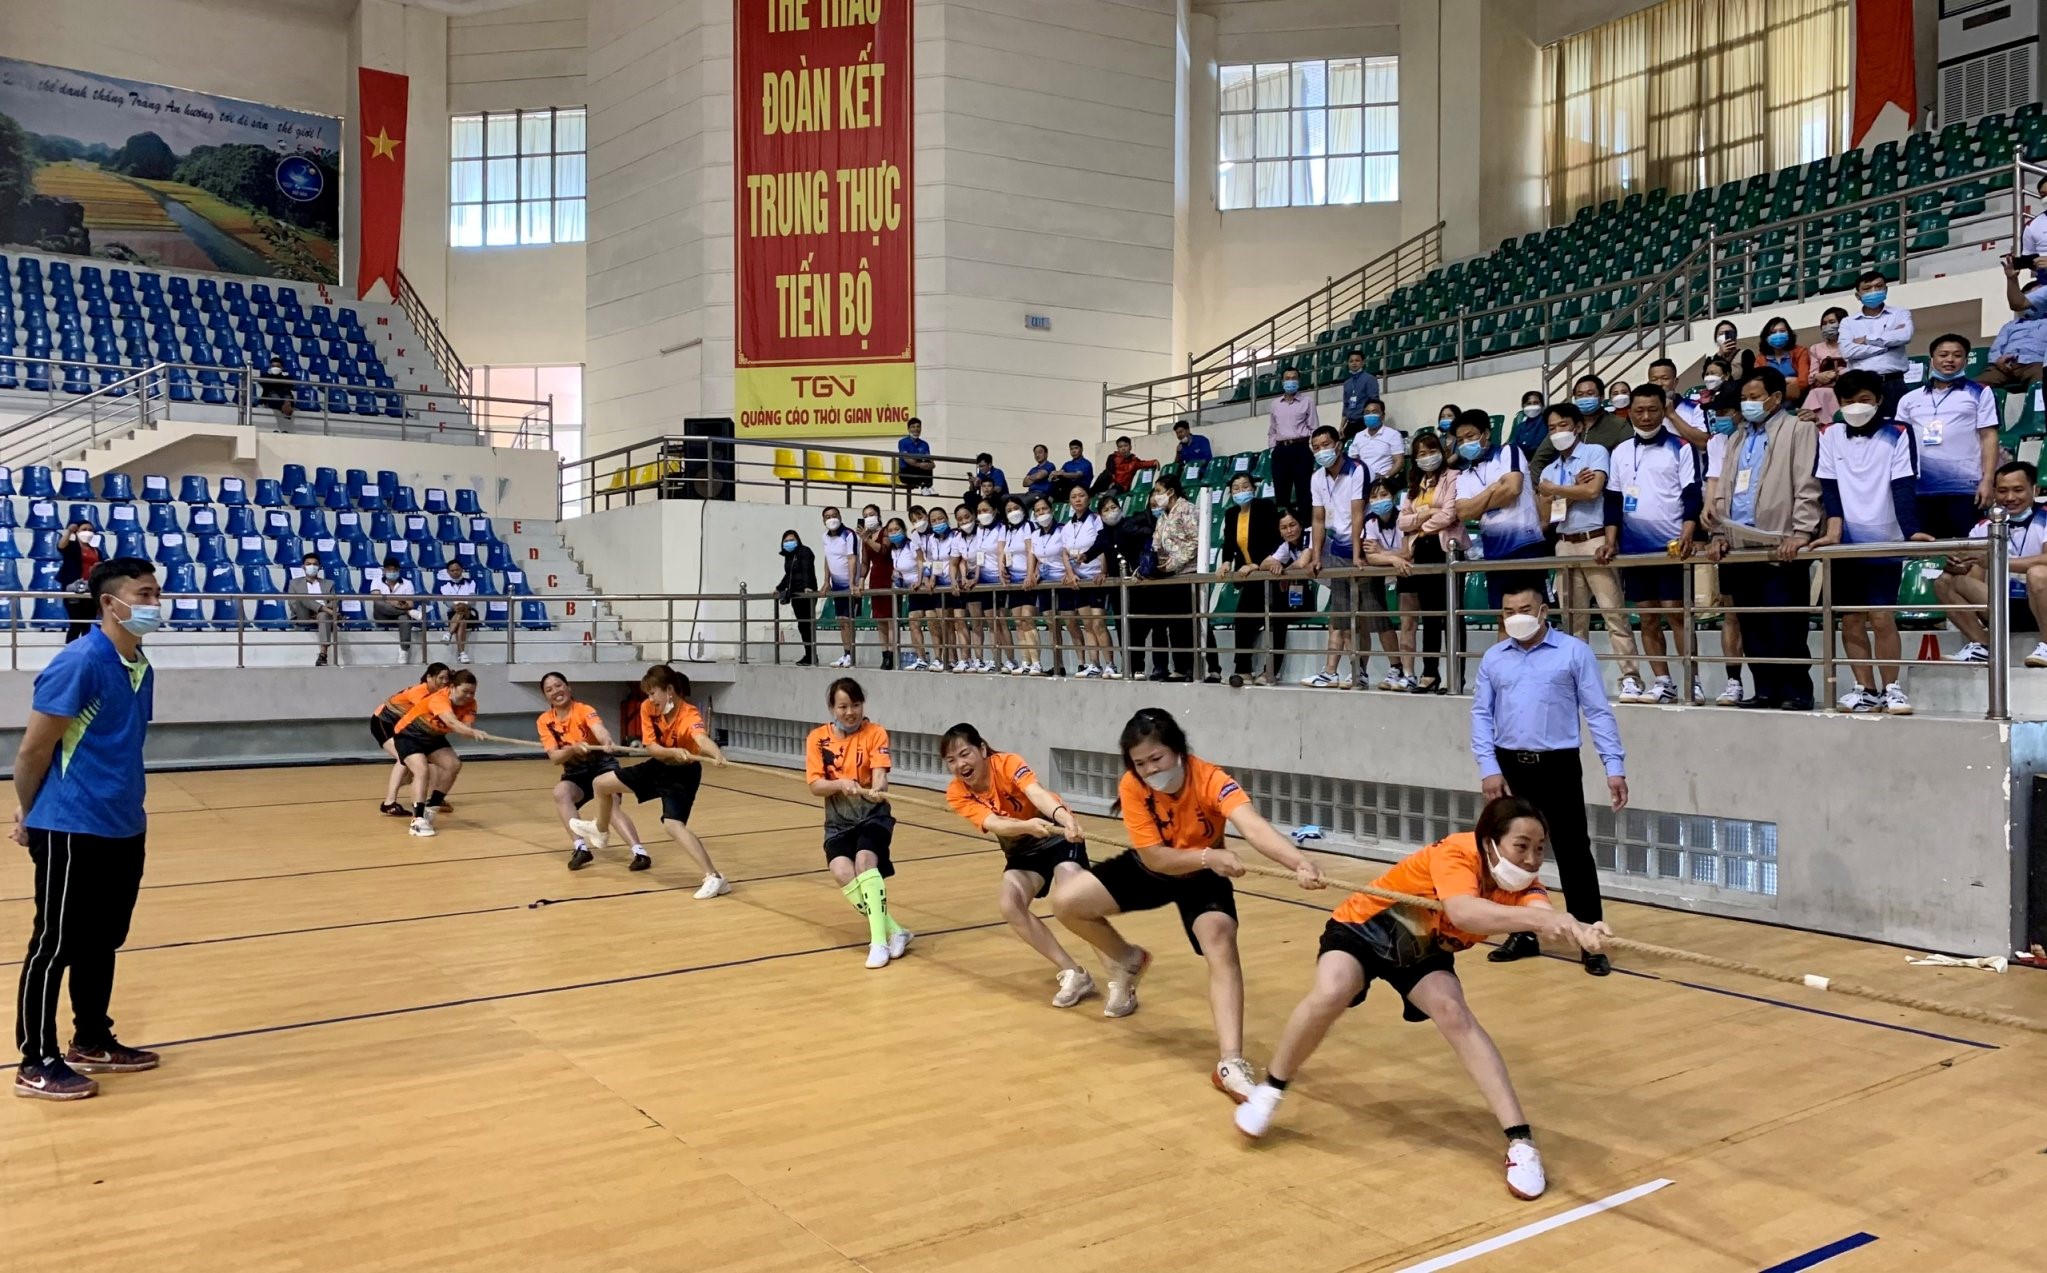 Thi đấu môn Karate và môn kéo co Đại hội TDTT tỉnh Ninh Bình lần thứ V – 2022